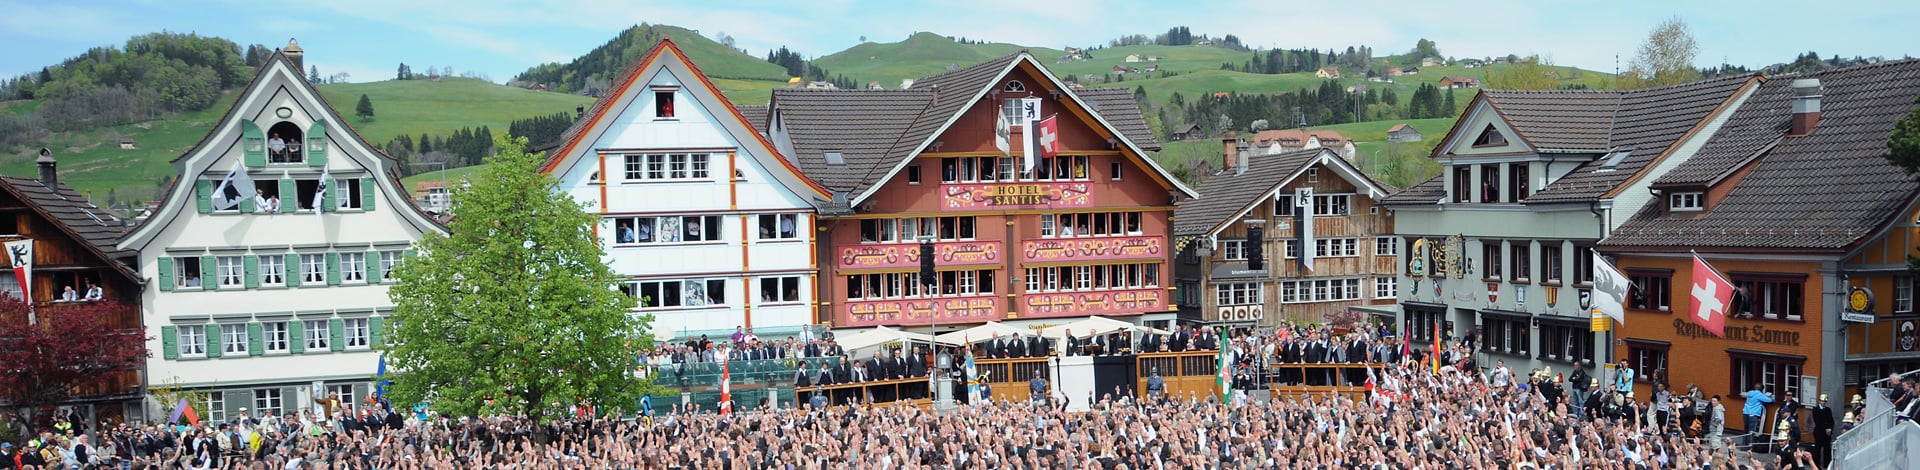 Volk auf Platz in Appenzell